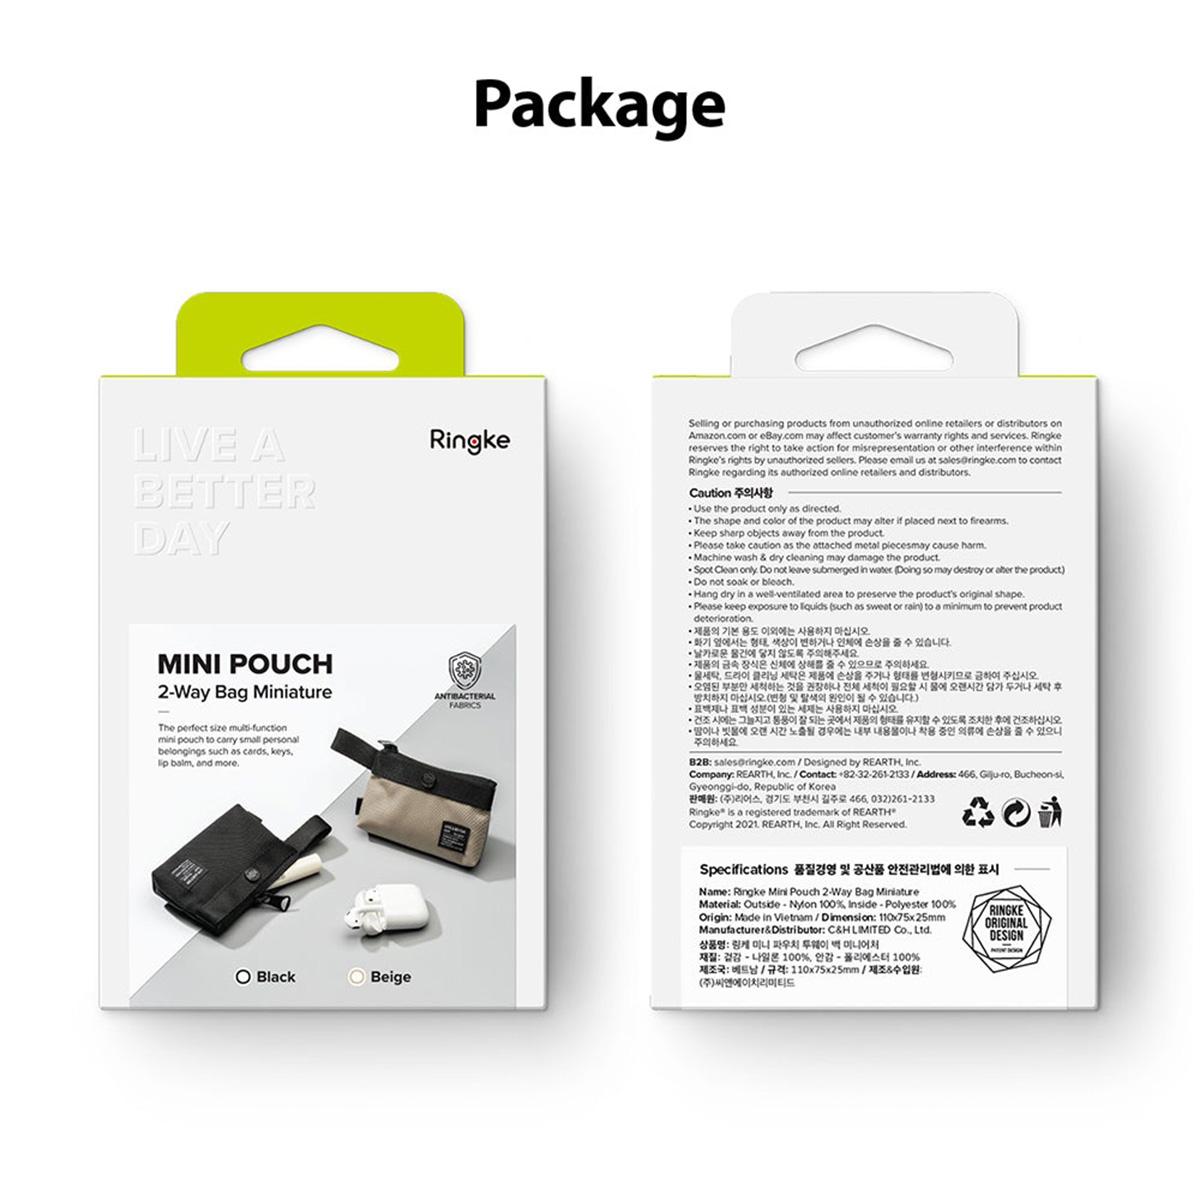 Ringke Mini Pouch - 11 x 7.5 x 2.5 cm ( Two Way Bag Miniature)